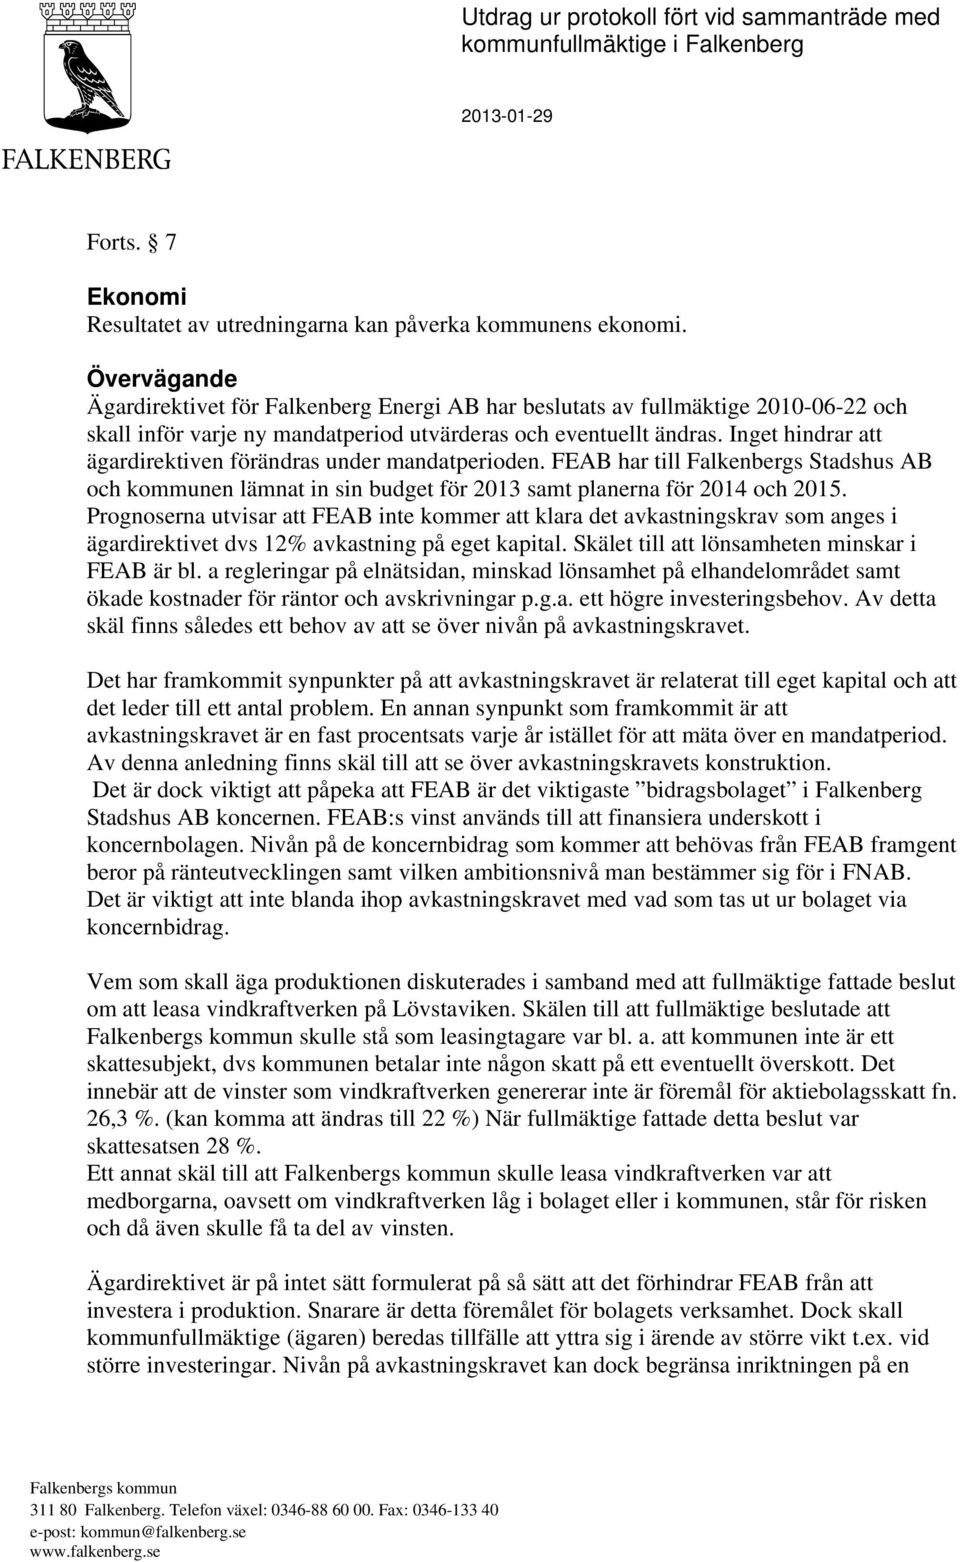 Inget hindrar att ägardirektiven förändras under mandatperioden. FEAB har till Falkenbergs Stadshus AB och kommunen lämnat in sin budget för 2013 samt planerna för 2014 och 2015.